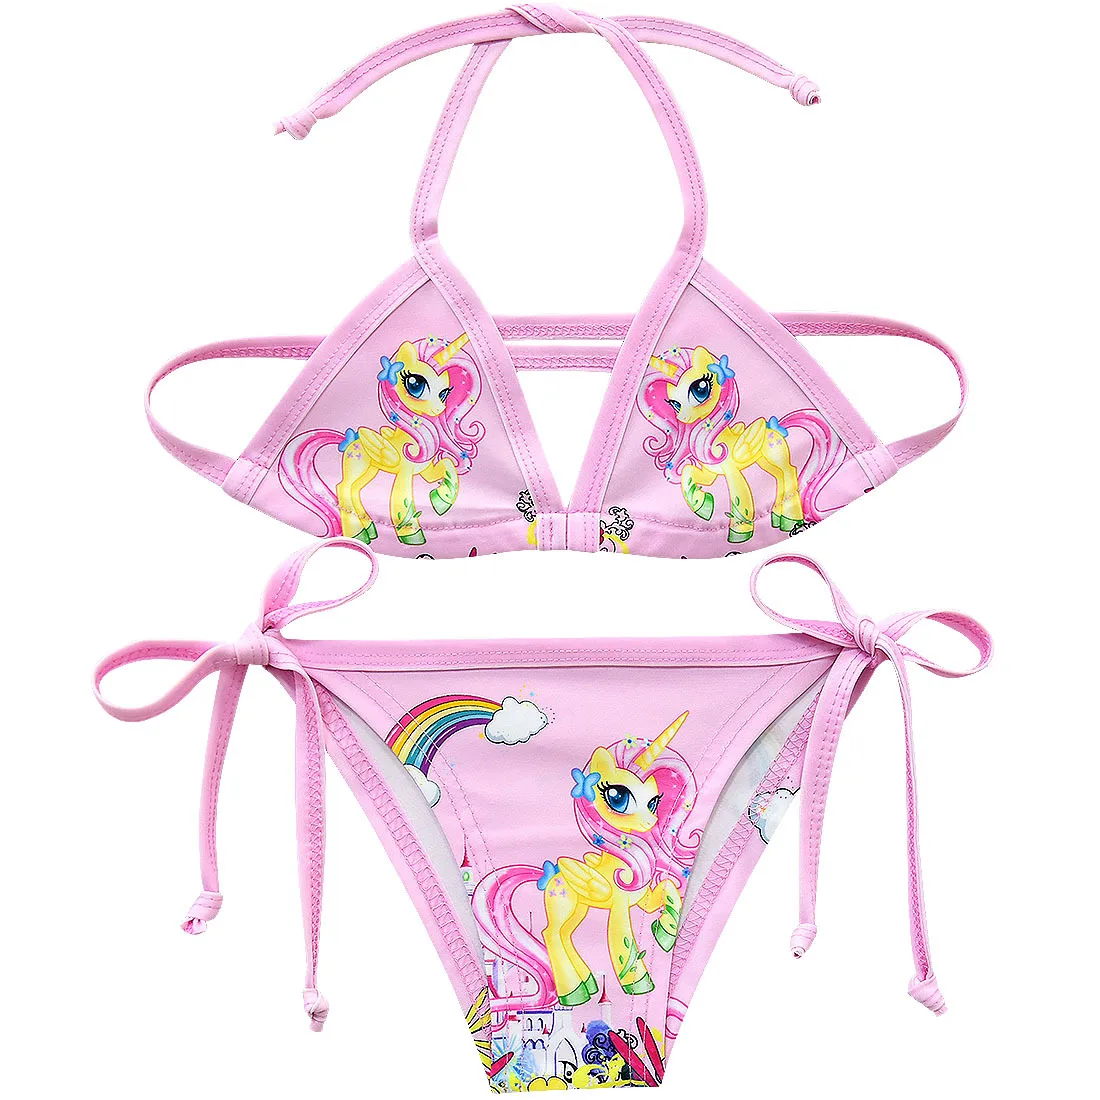 Модель года, купальные костюмы для девочек из двух предметов, костюмы-бикини летняя пляжная одежда для девочек возрастом от 3 до 10 лет красивые купальные костюмы с героями мультфильмов одежда для купания, G48-CZ946 для девочек - Цвет: G48-8066-pink